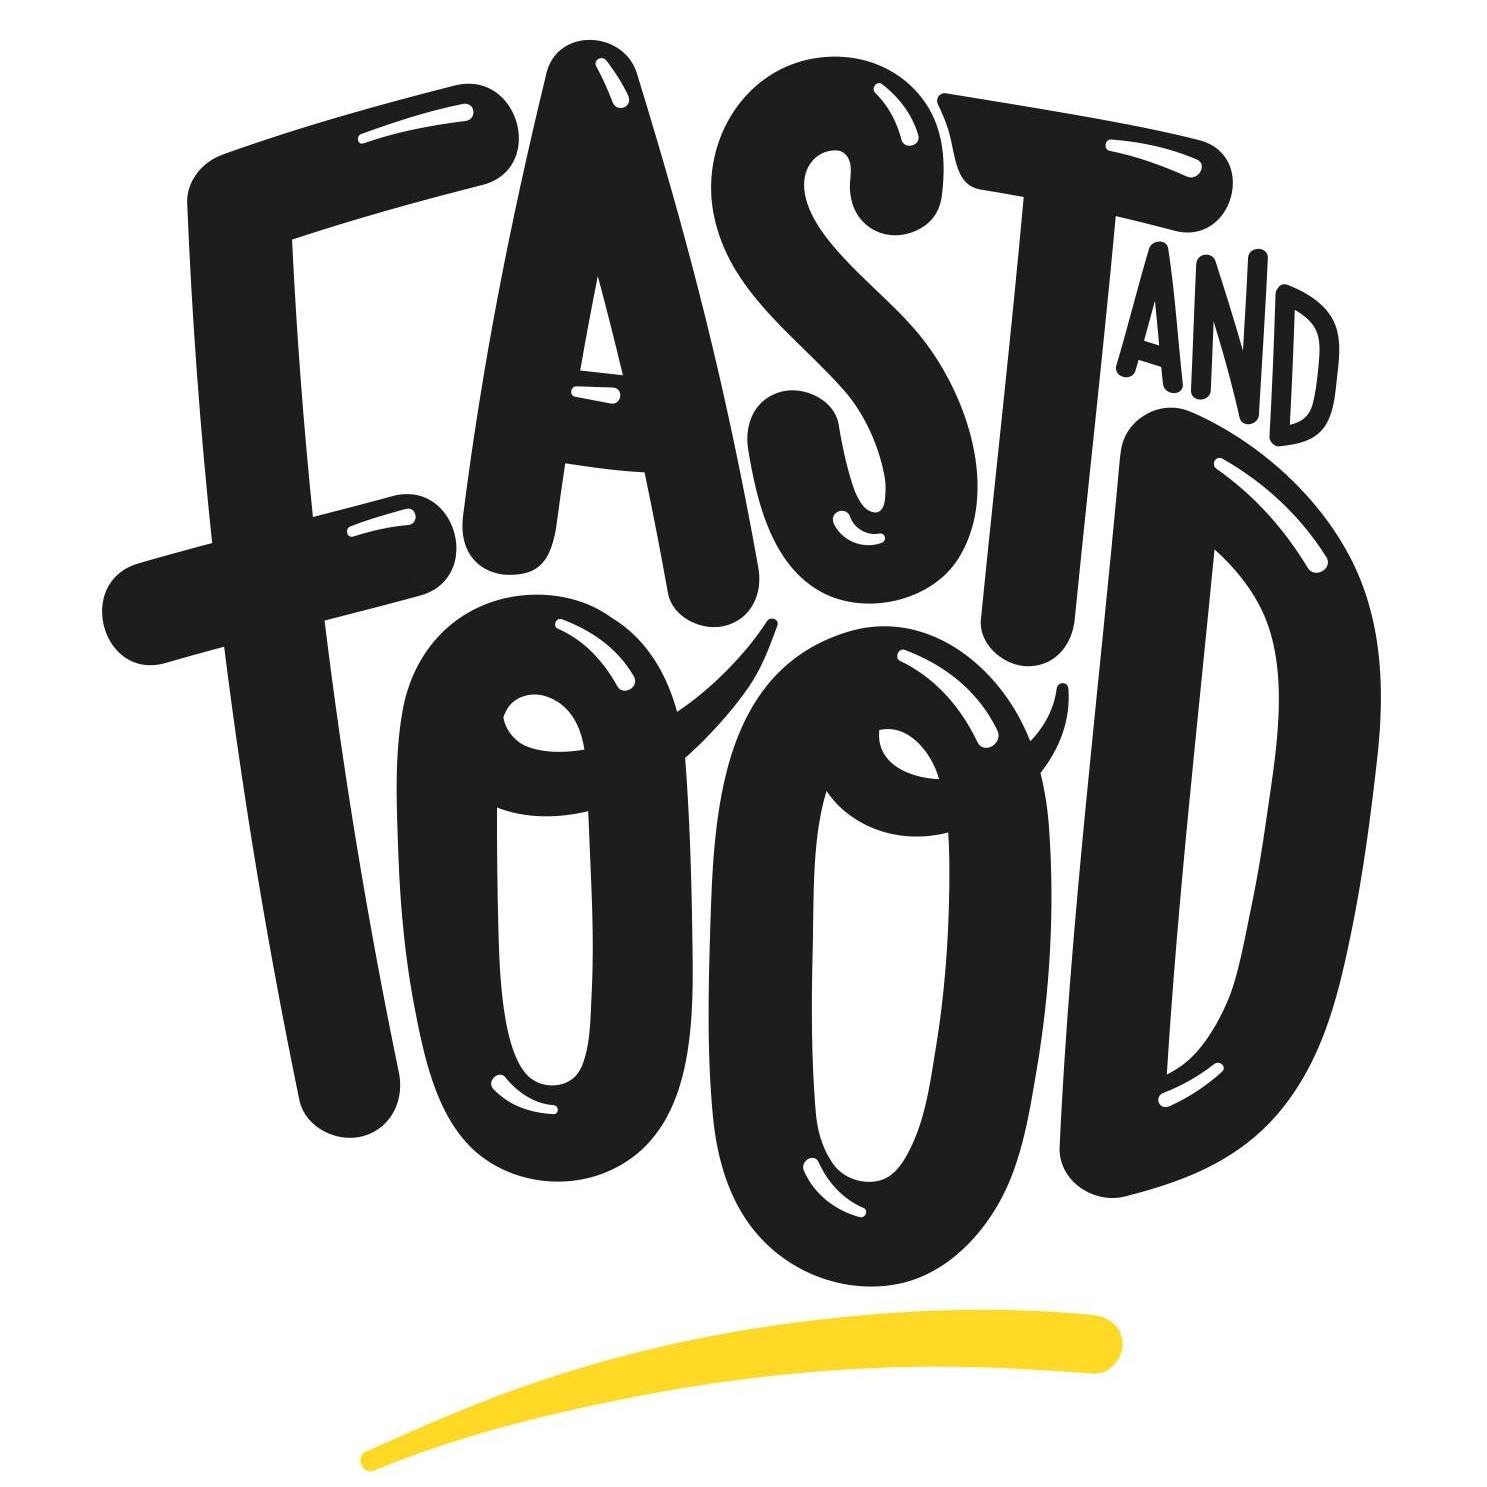 logo_fastandfood